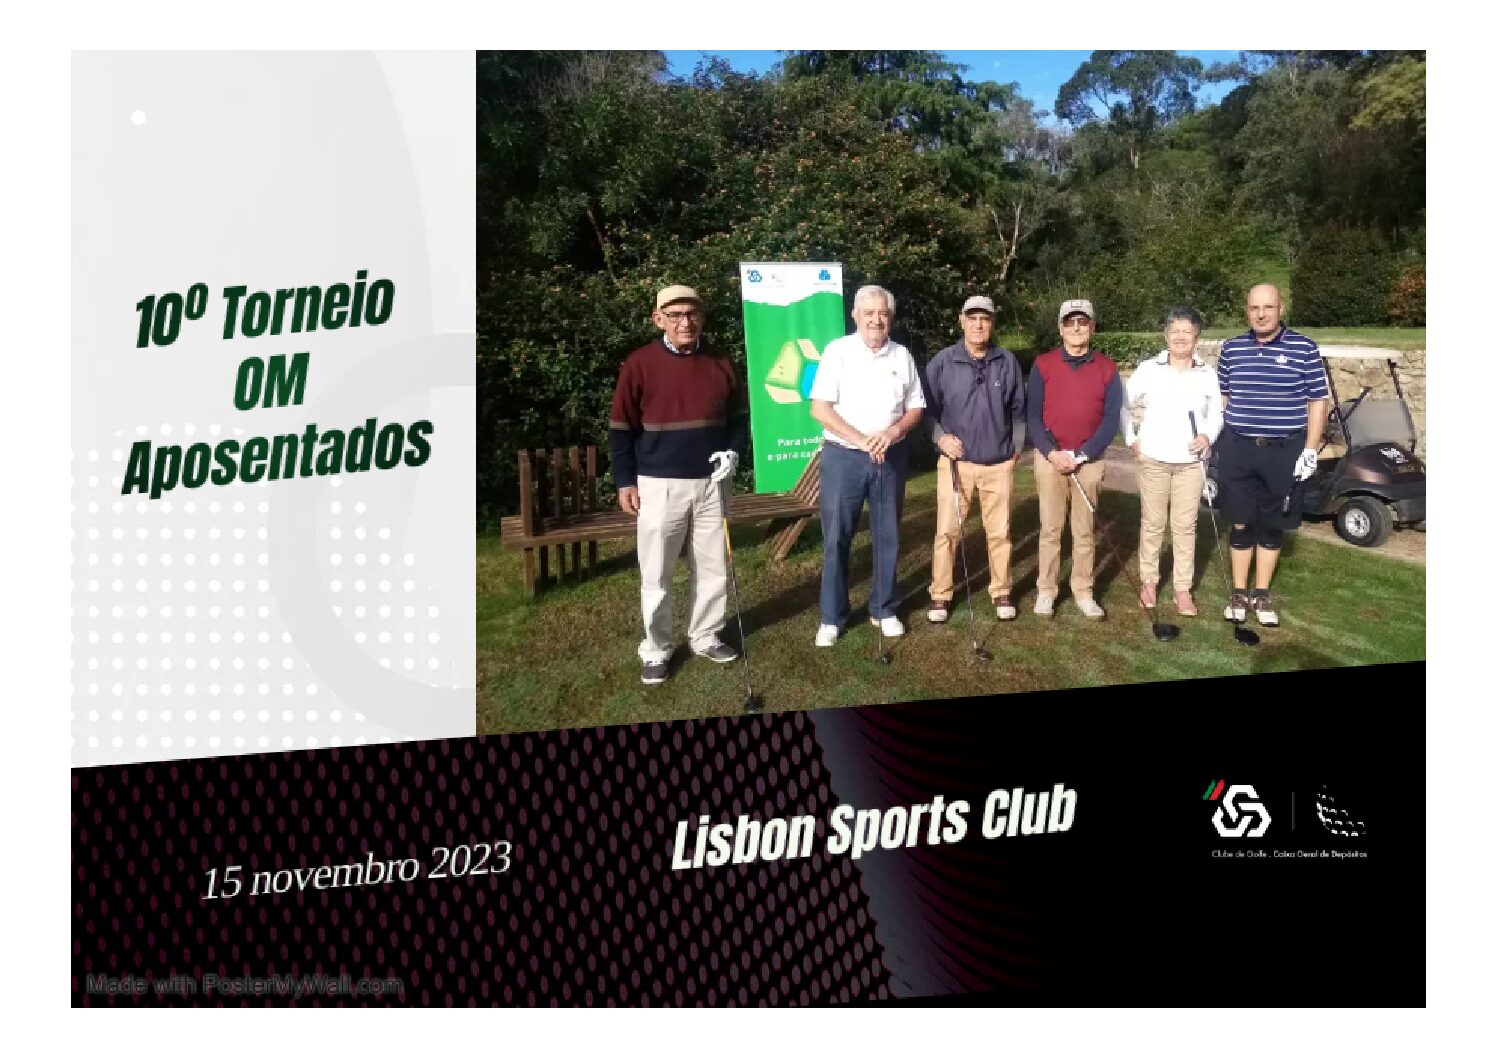 10º Torneio OM Aposentados – Lisbon, 15 novembro